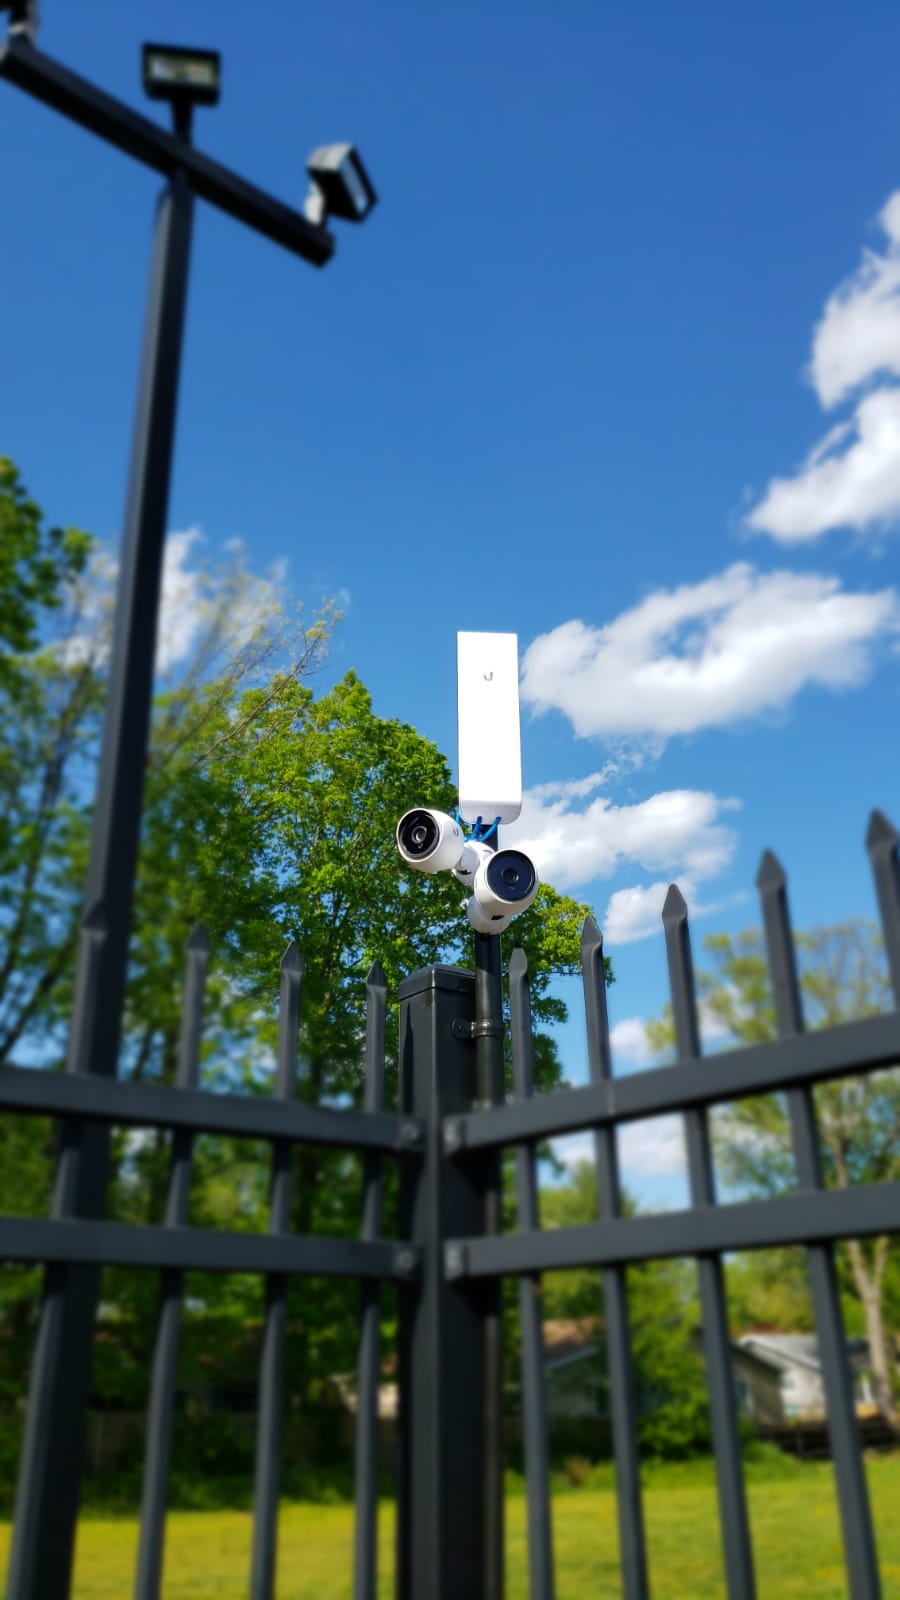 Unifi Security Cameras